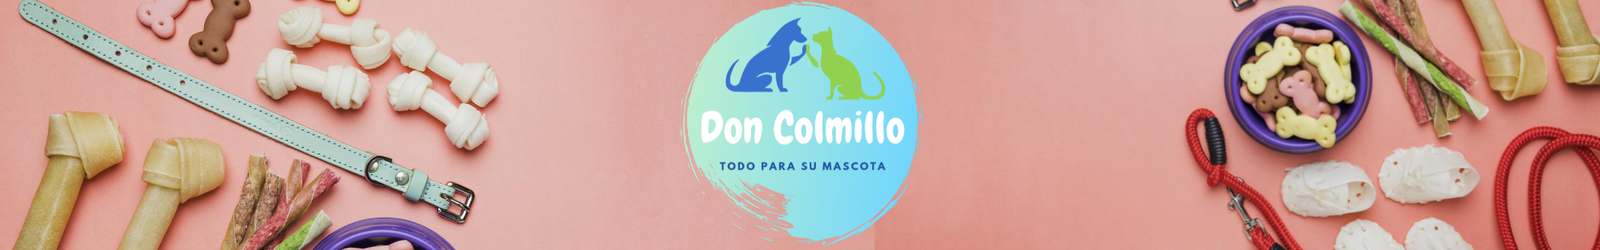 Don colmillo Pet Shop - Alimento balanceado a domicilio (1)